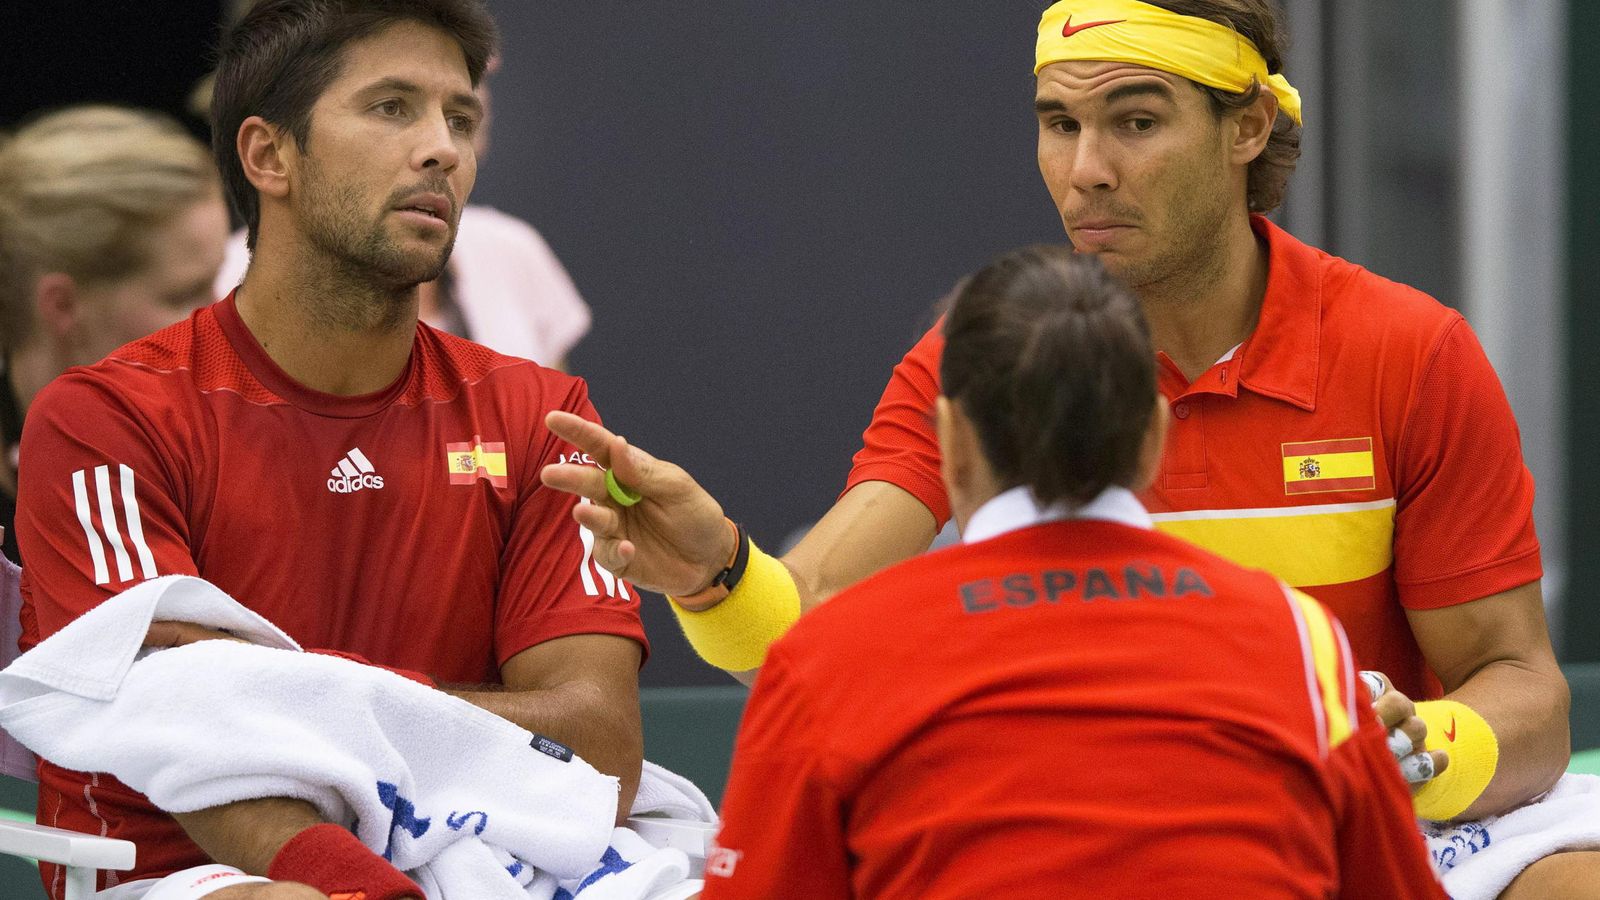 Foto: Conchita Martínez da indicaciones a Nadal y Verdasco en la eliminatoria de Davis (Reuters).